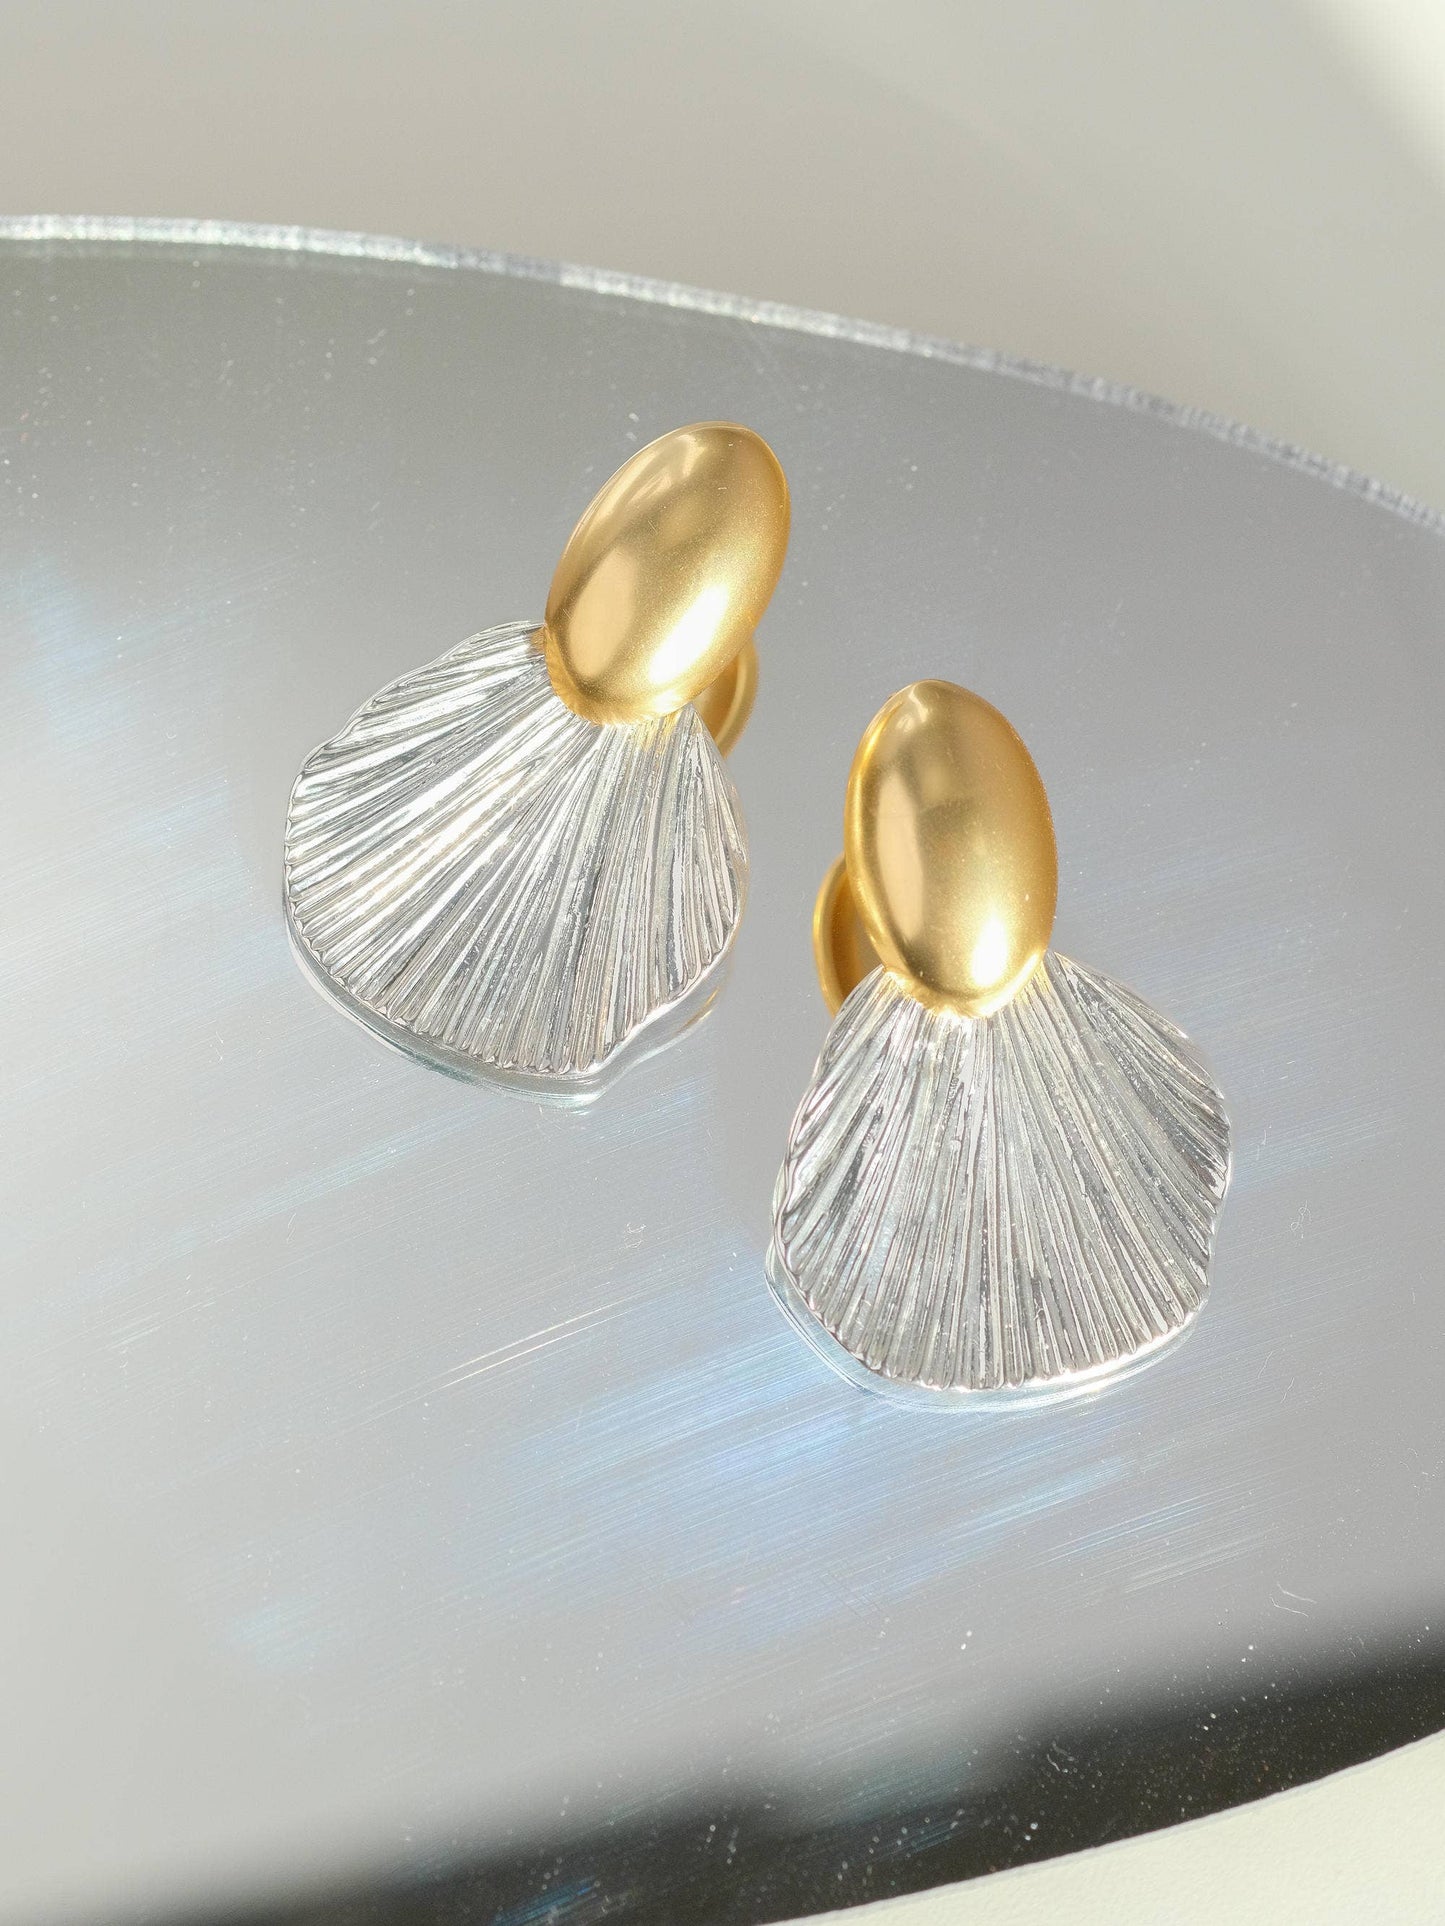 Giselle 18K Vintage Gold Dipped Shell Earrings